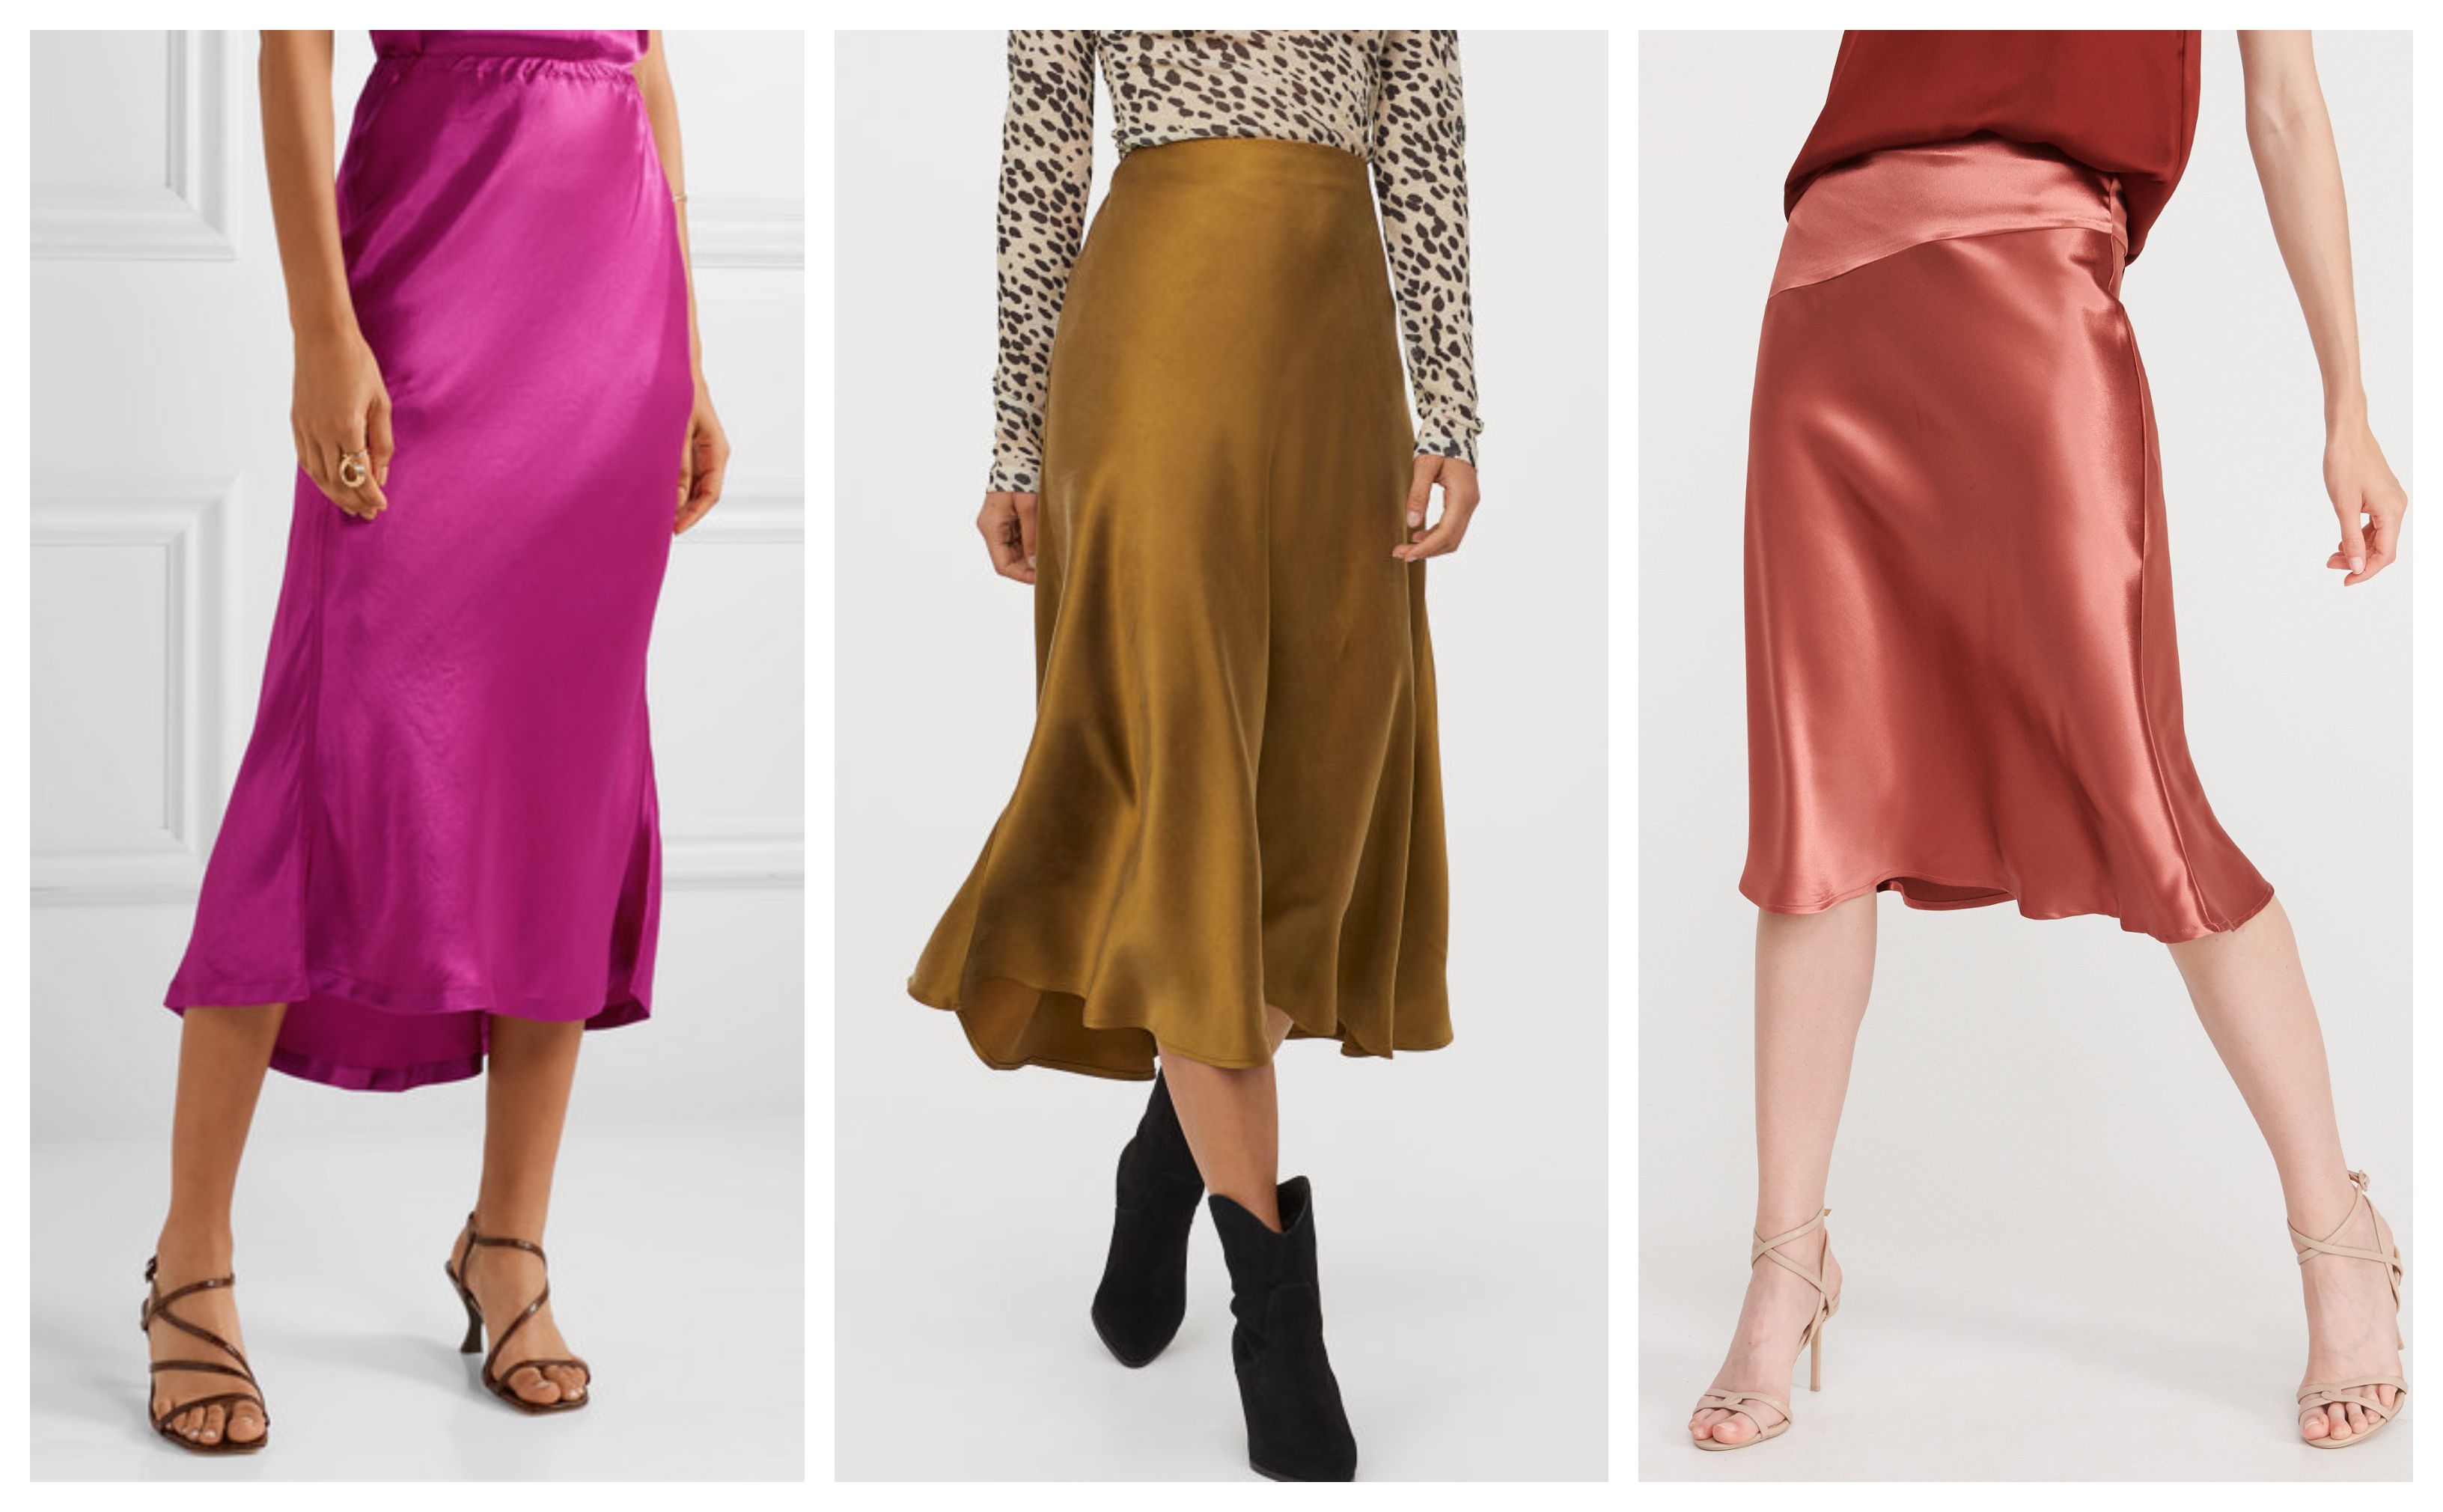 Satenske suknje veliki su trend ove jeseni, pa smo izabrali najljepše